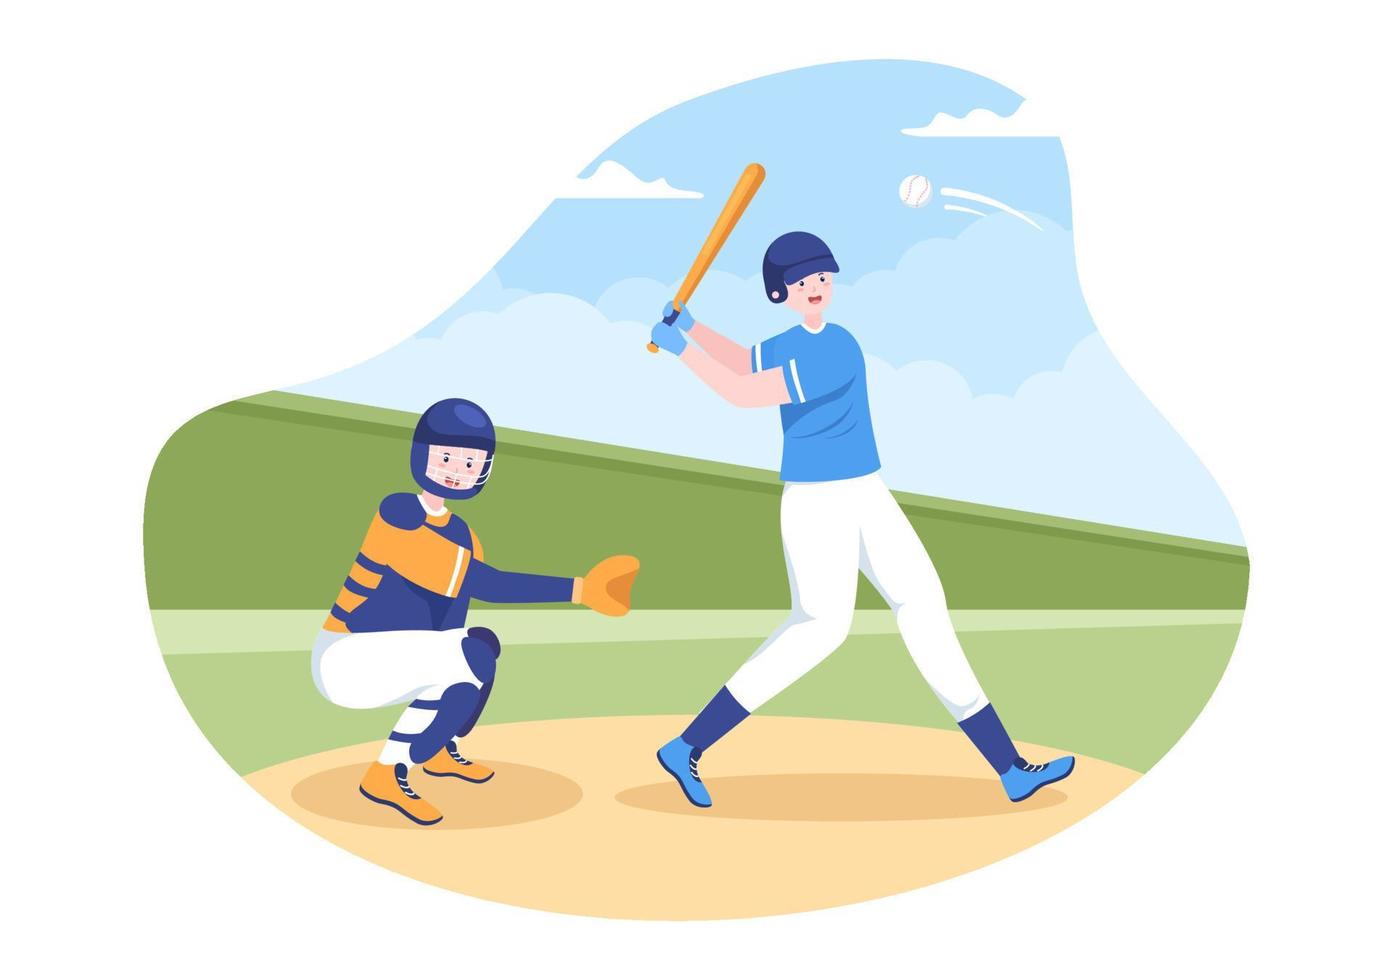 joueur de baseball sports lancer, attraper ou frapper une balle avec des battes et des gants portant l'uniforme sur le stade de la cour en illustration de dessin animé plat vecteur